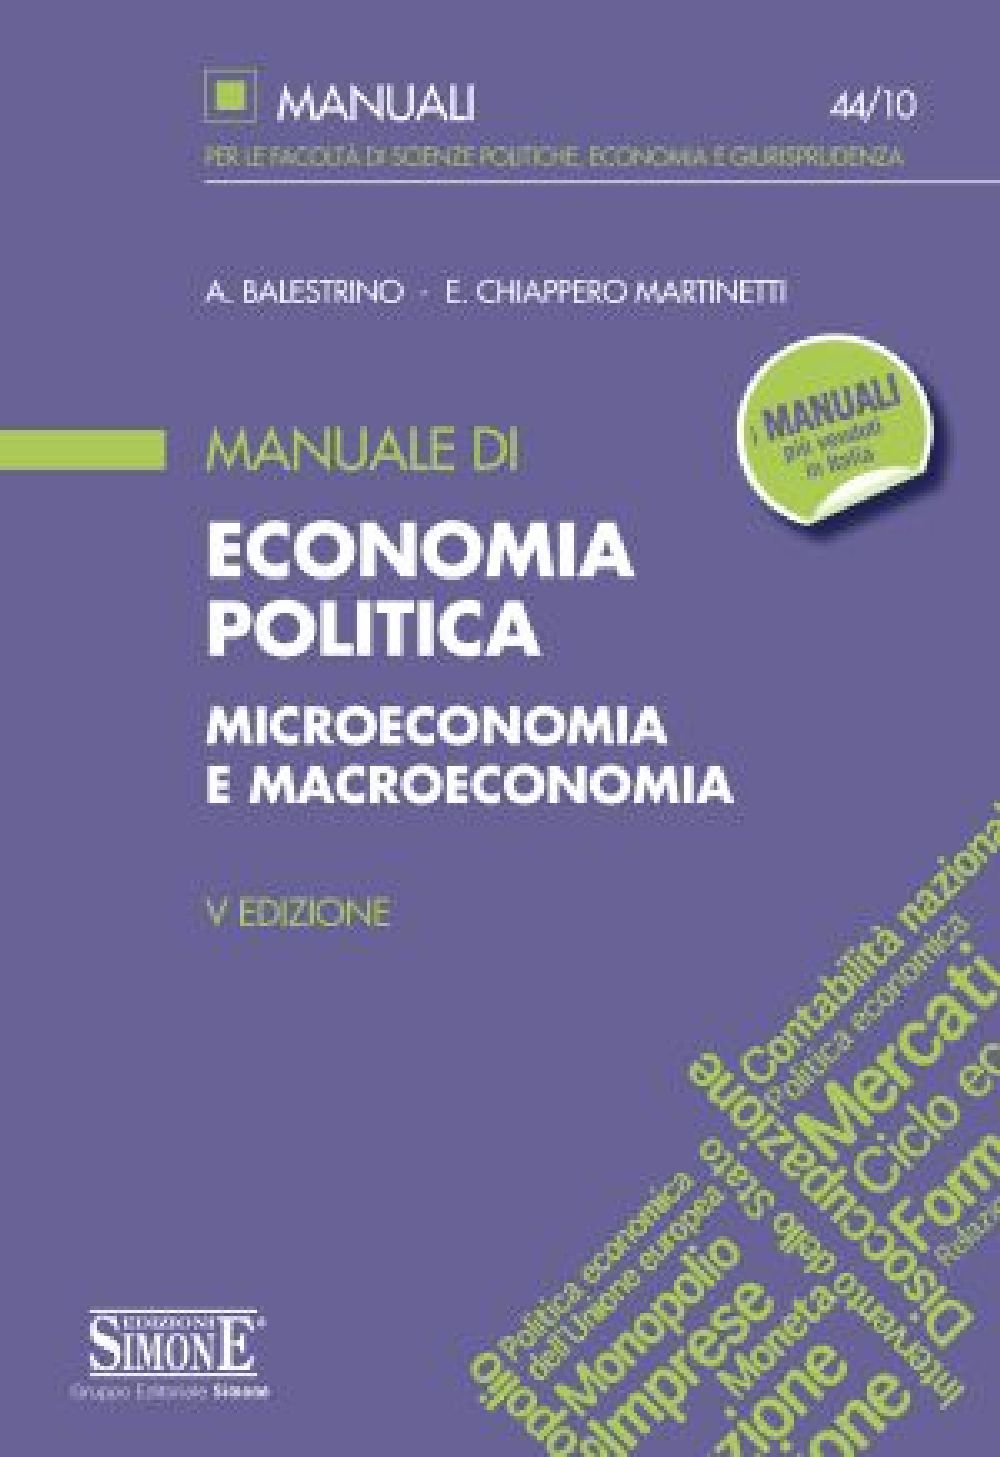 [Ebook] Manuale di Economia Politica